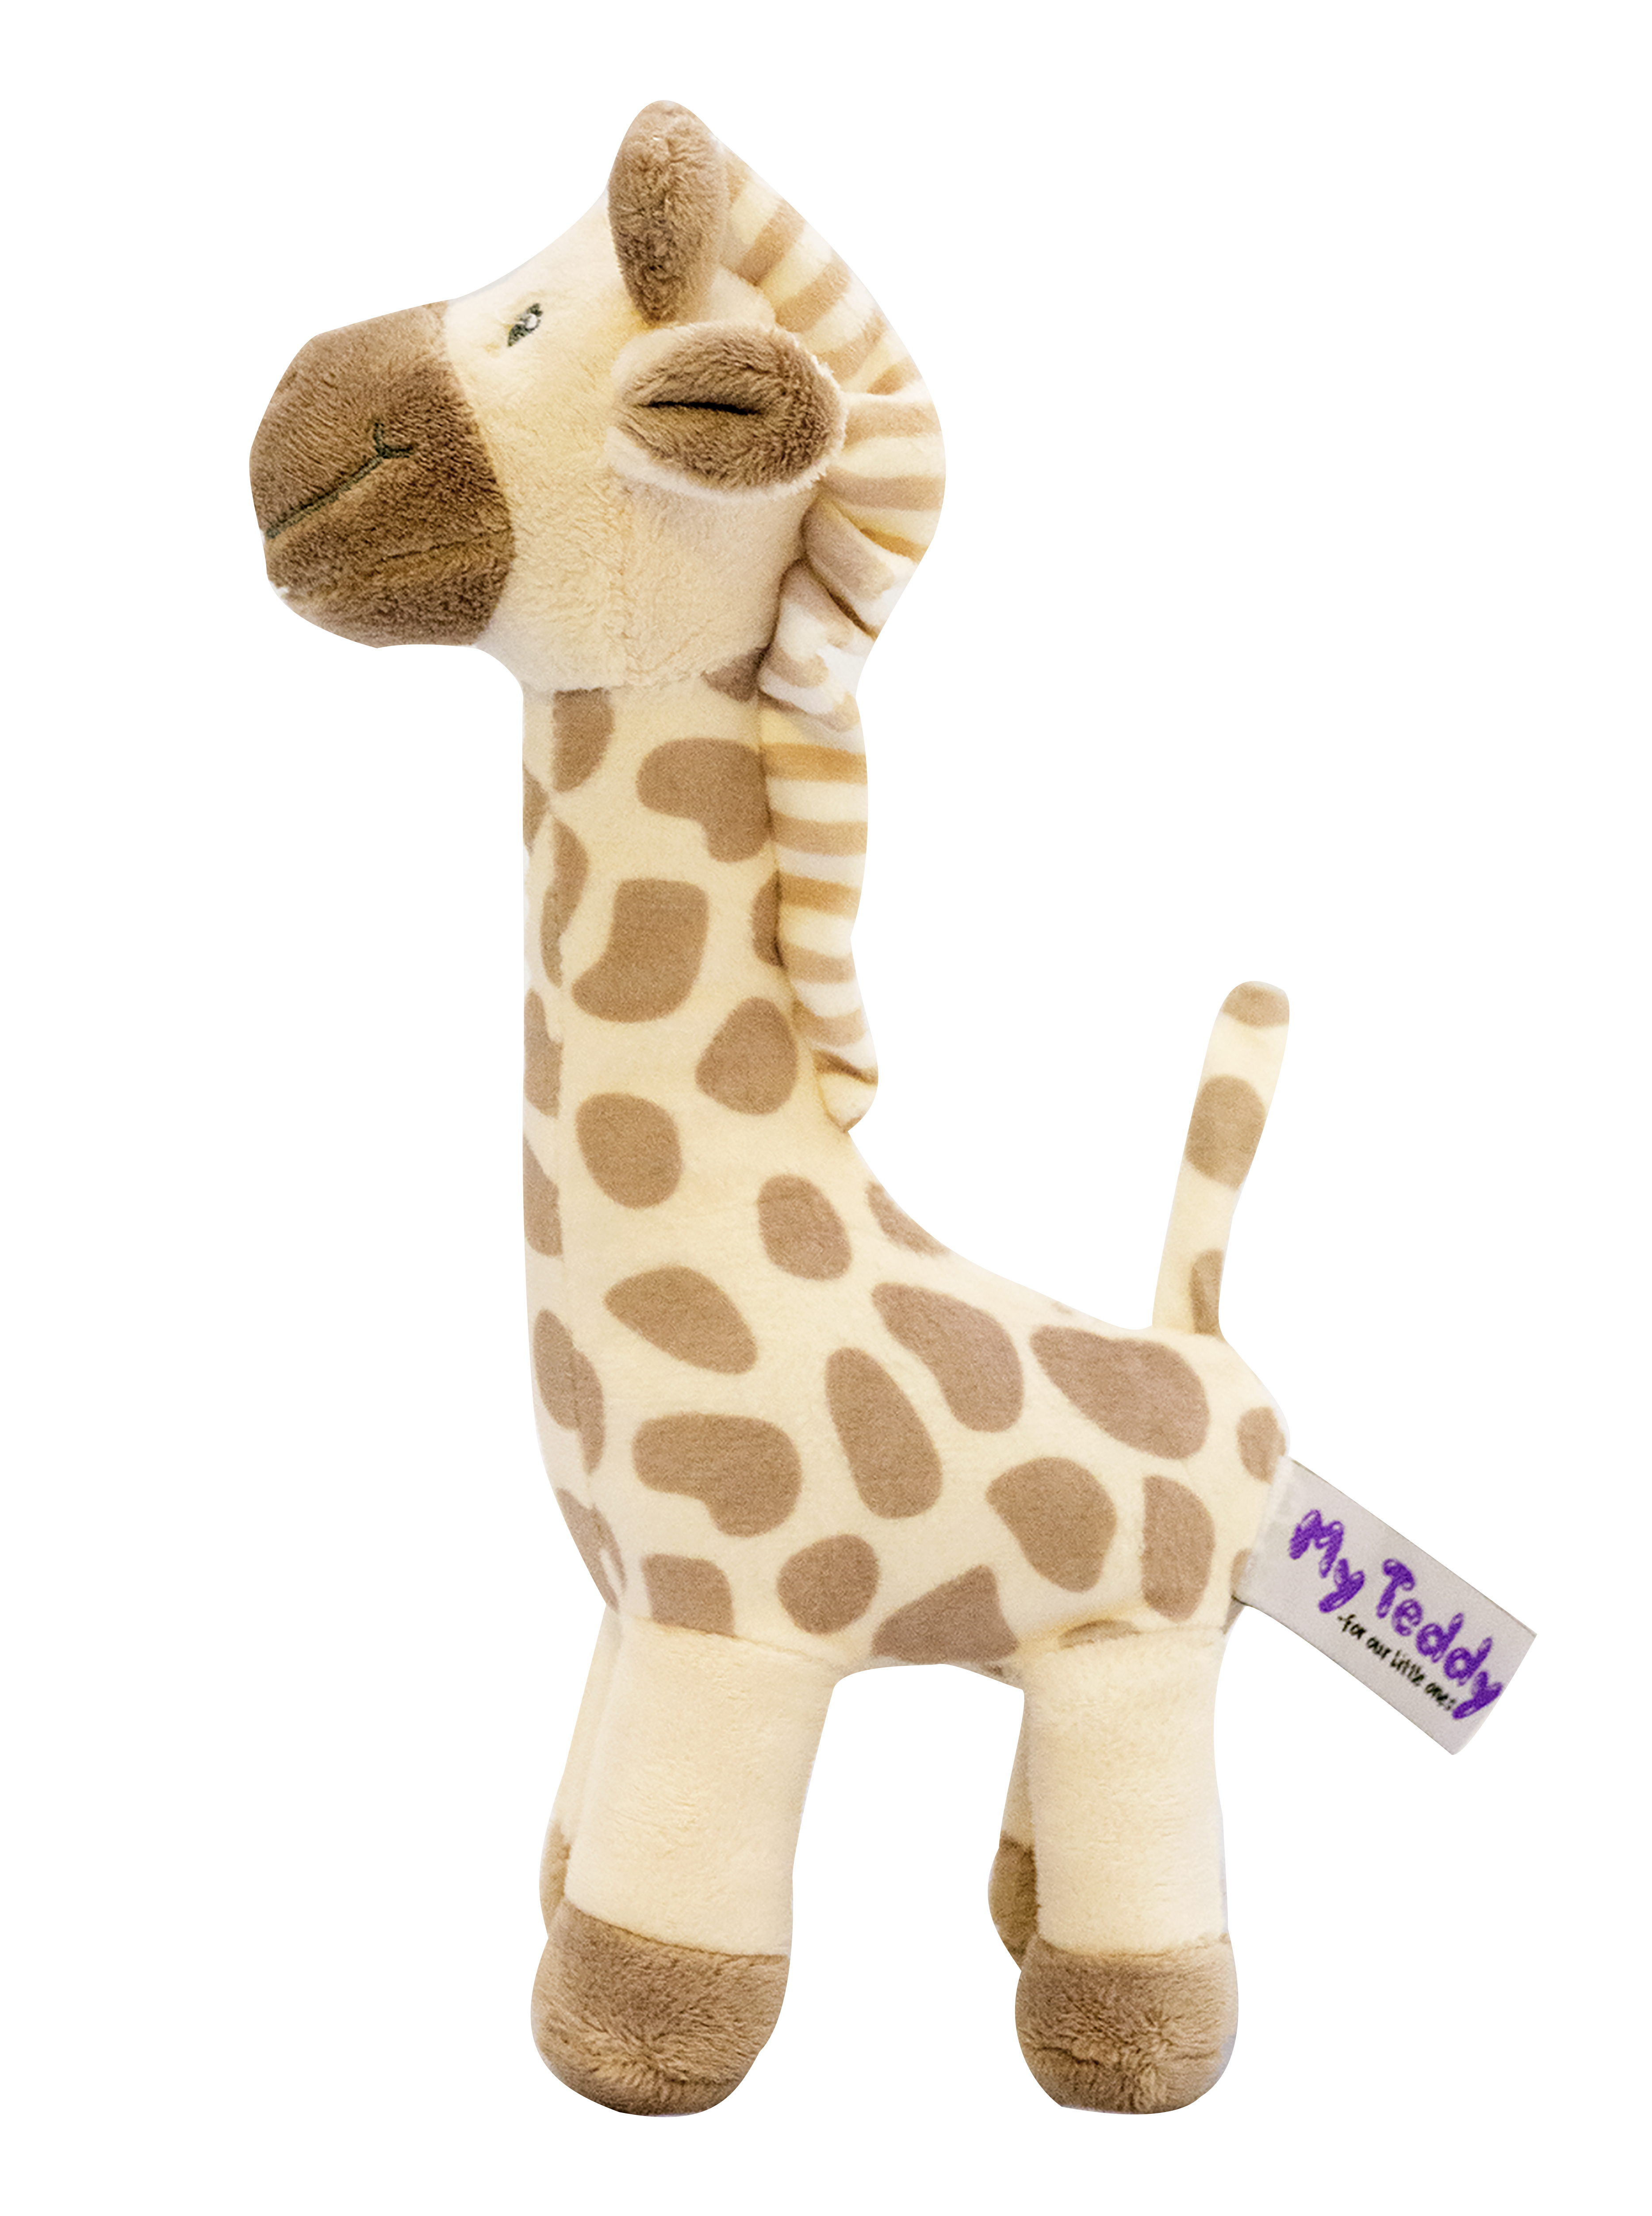 My Teddy Giraffe Rangle, stor, I brune farger, 0 mnd +